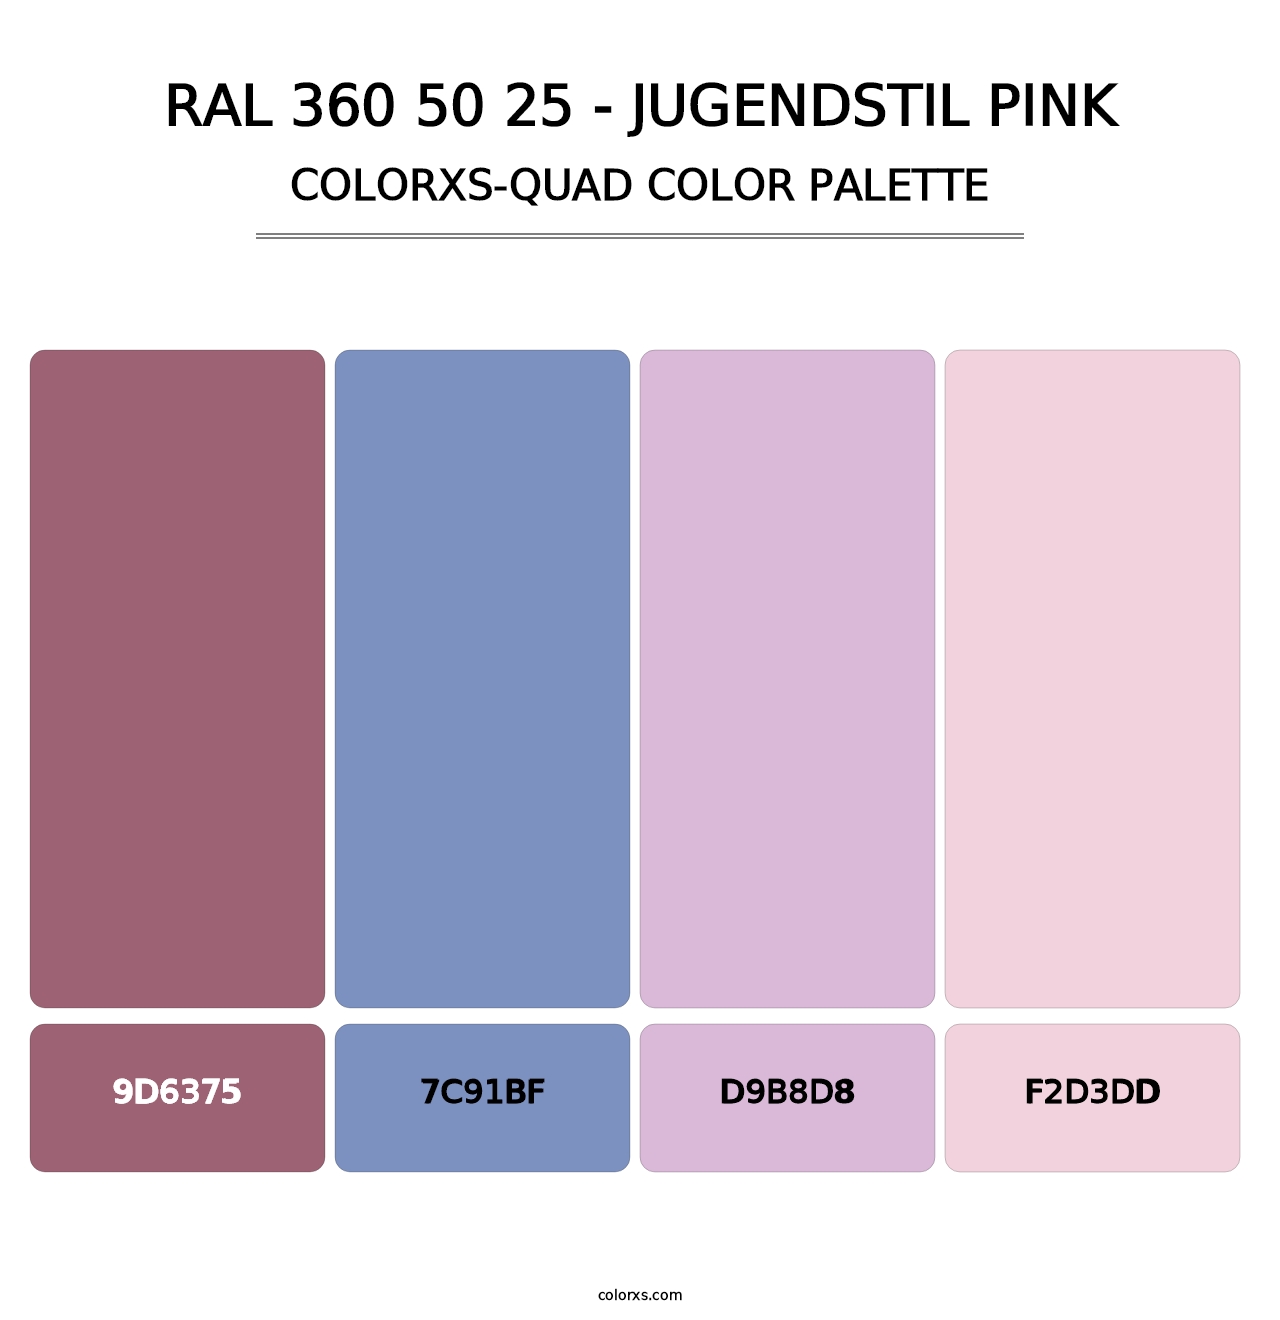 RAL 360 50 25 - Jugendstil Pink - Colorxs Quad Palette